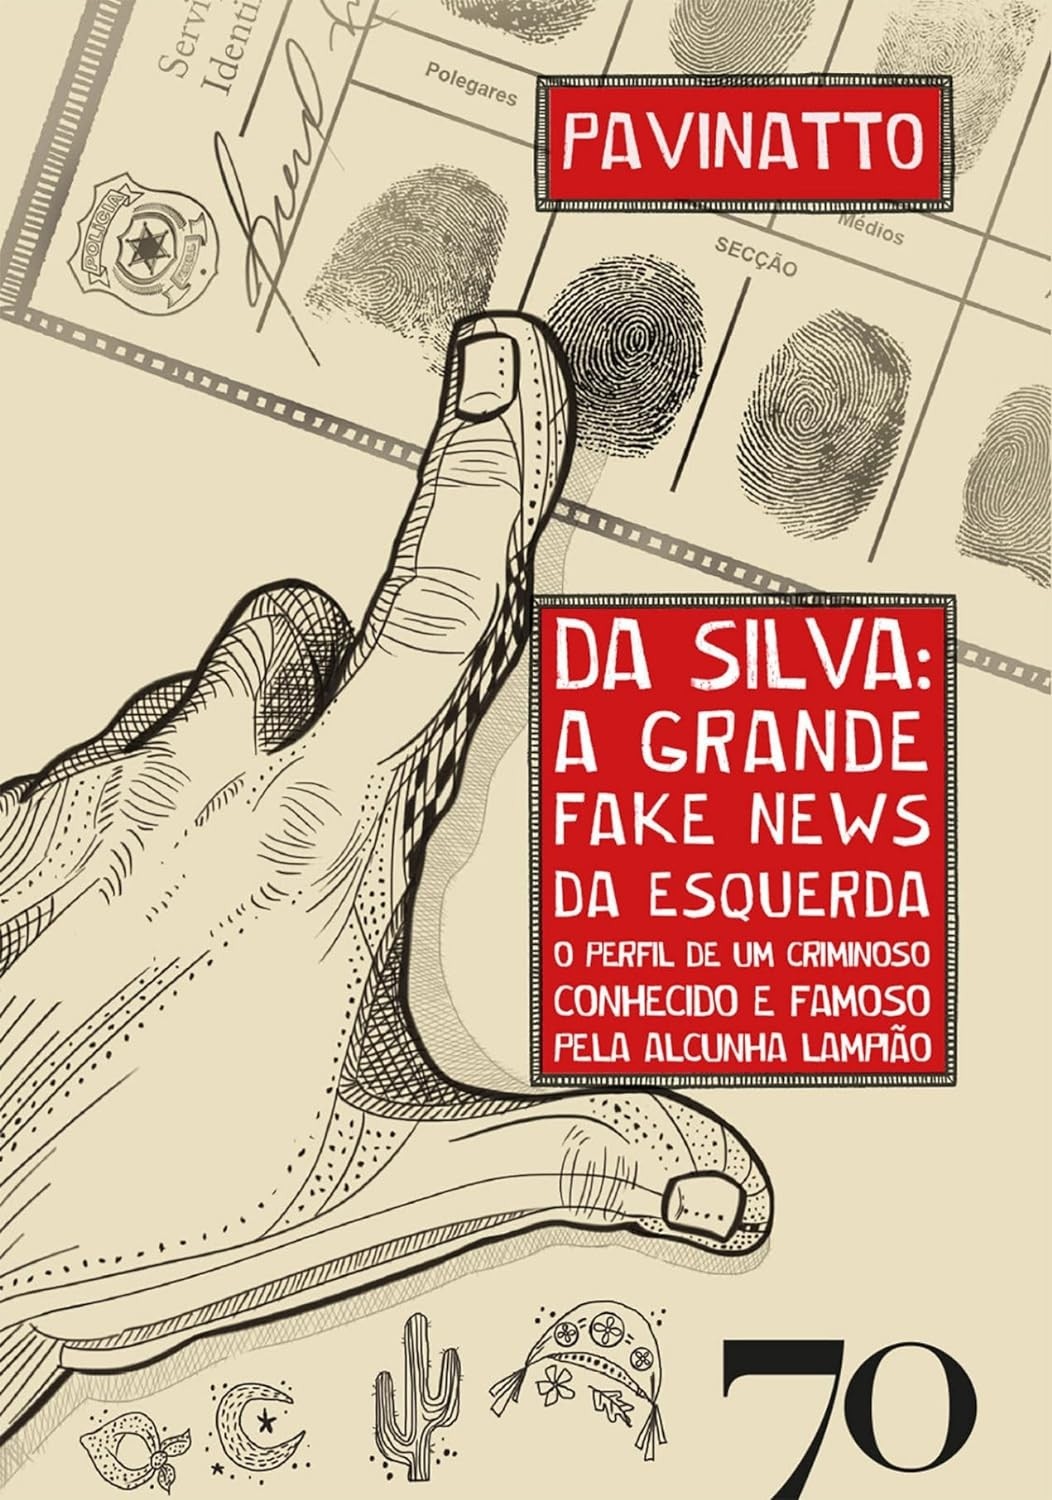 Da Silva: a Grande Fake News da Esquerda: o Perfil de um Criminoso Conhecido e Famoso Pela Alcunha Lampião 